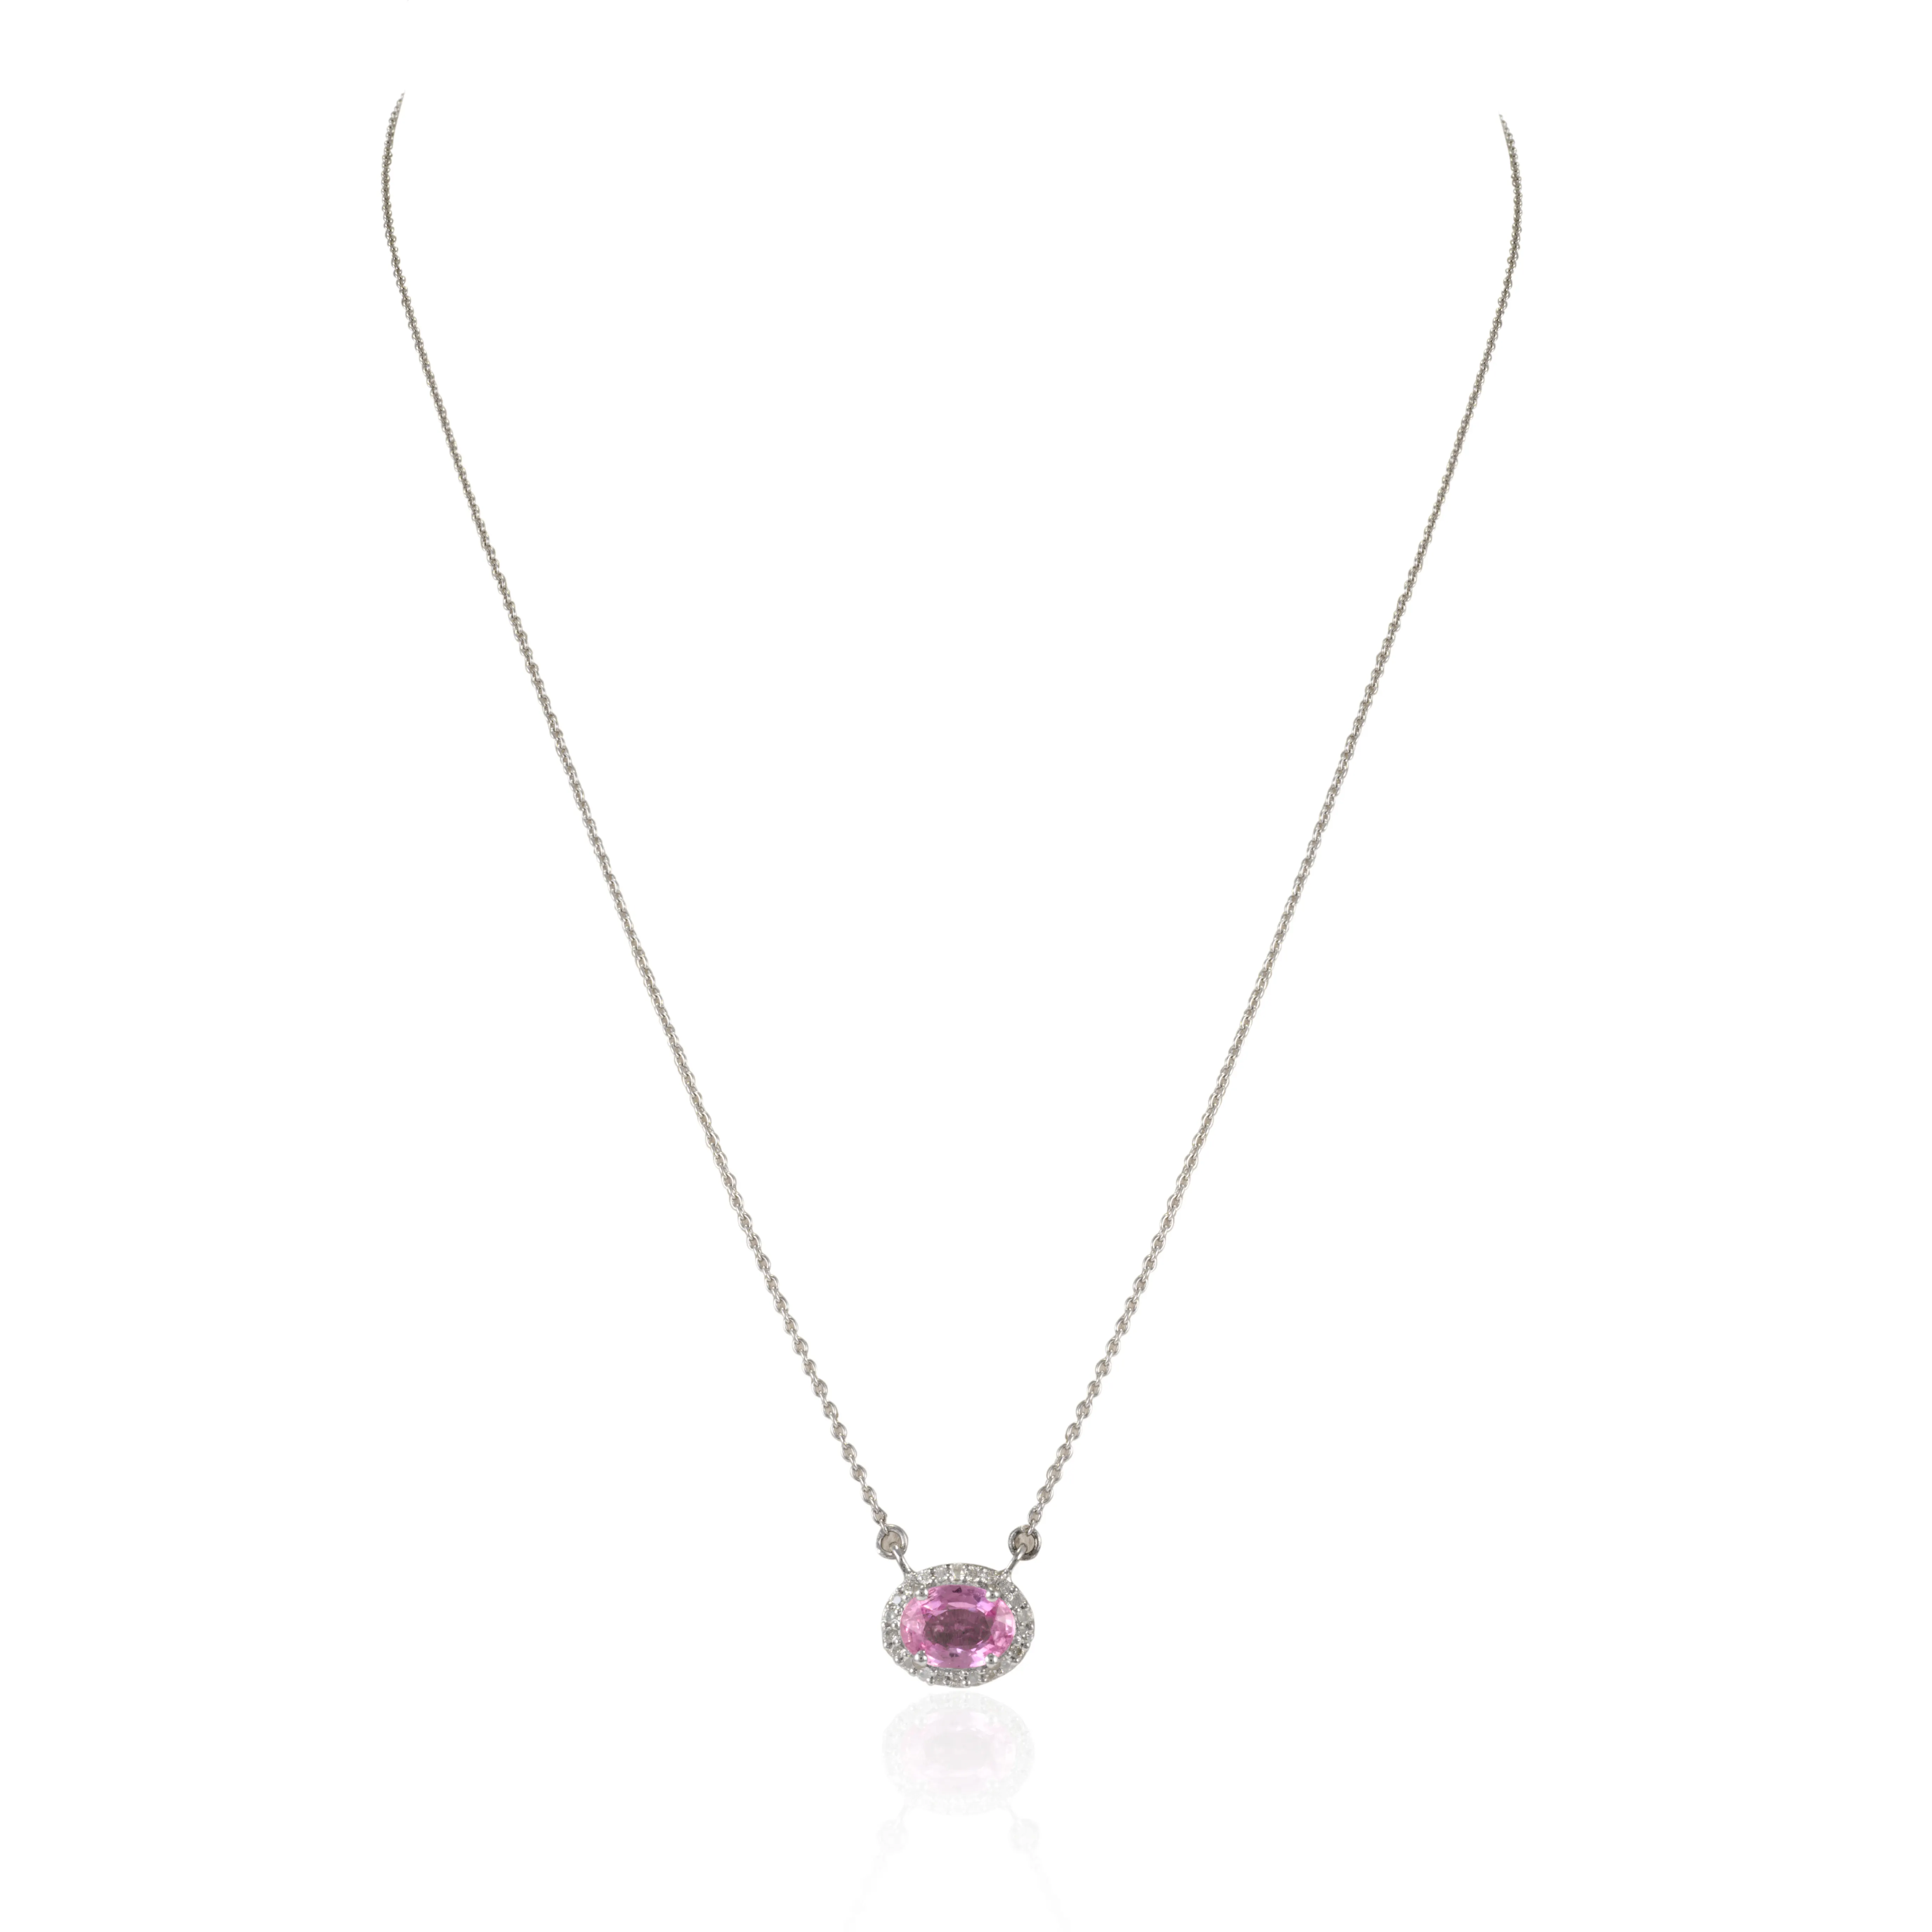 Ultima collezione di 100% fatti a mano collana di zaffiri e diamanti rosa naturale 14k oro bianco massiccio gioielli unici alla moda